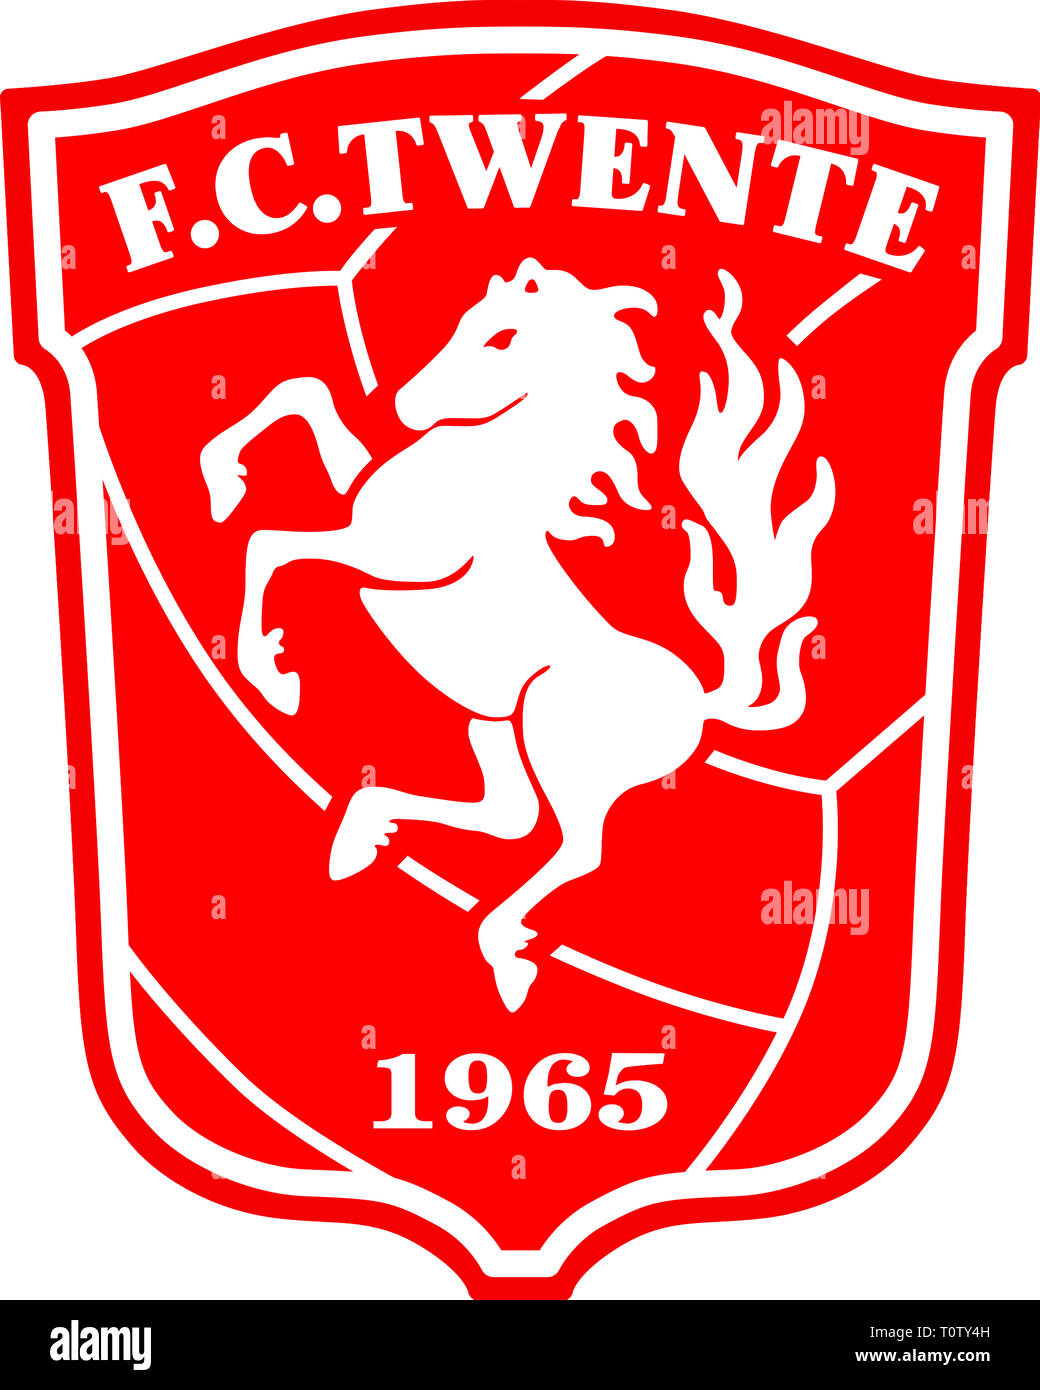 Logo de l'équipe néerlandaise de football FC Twente Enschede - Pays-Bas  Photo Stock - Alamy